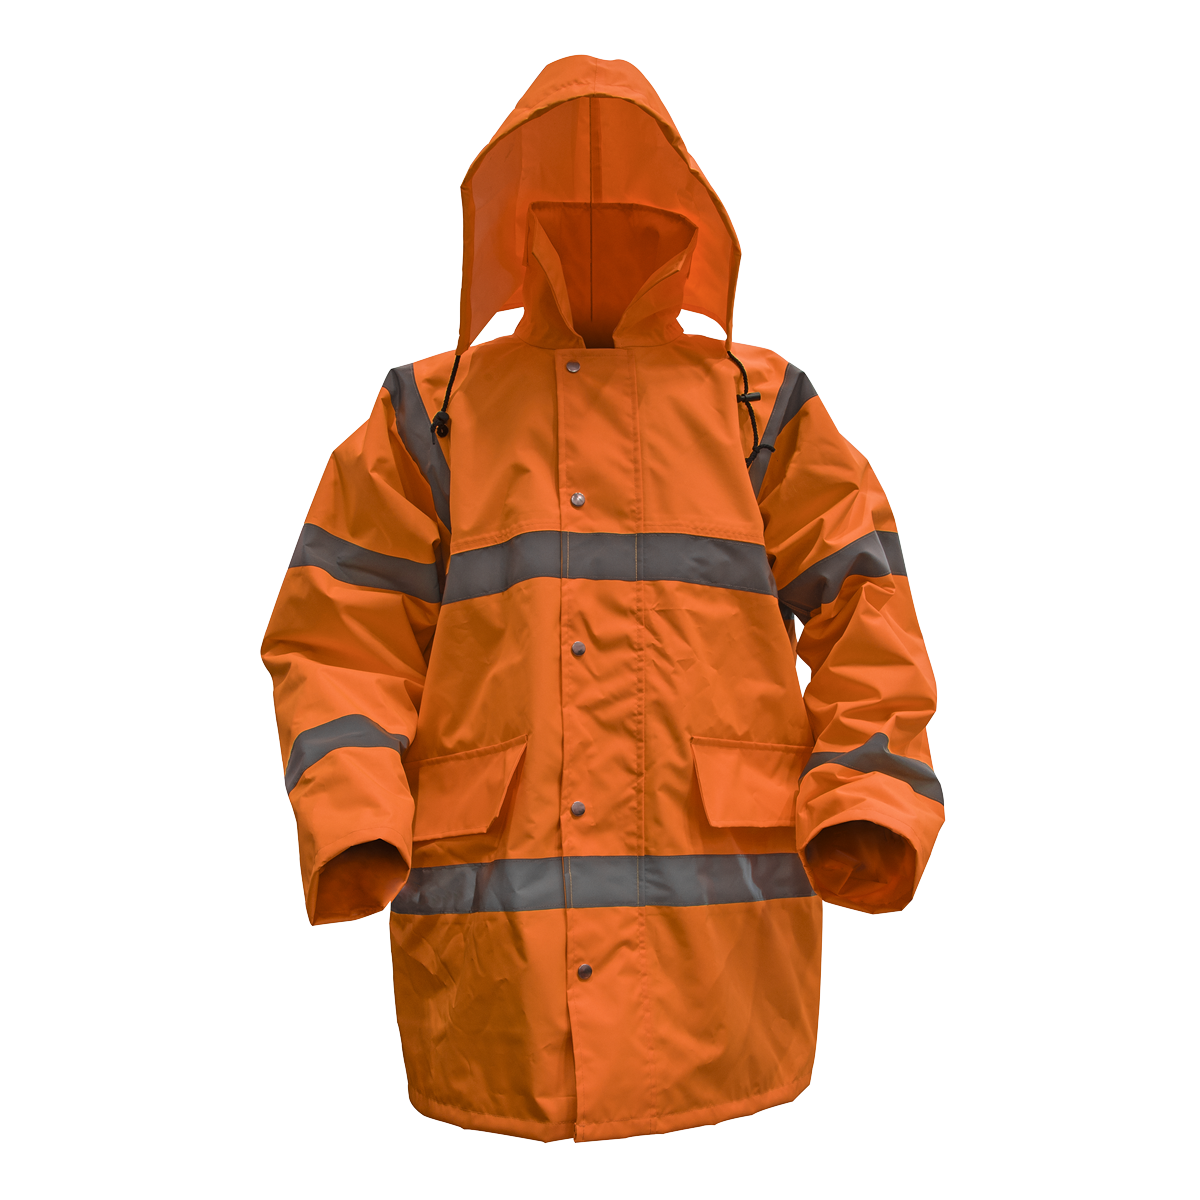 Hi-Vis Orange Motorway Jacket with Quilted Lining